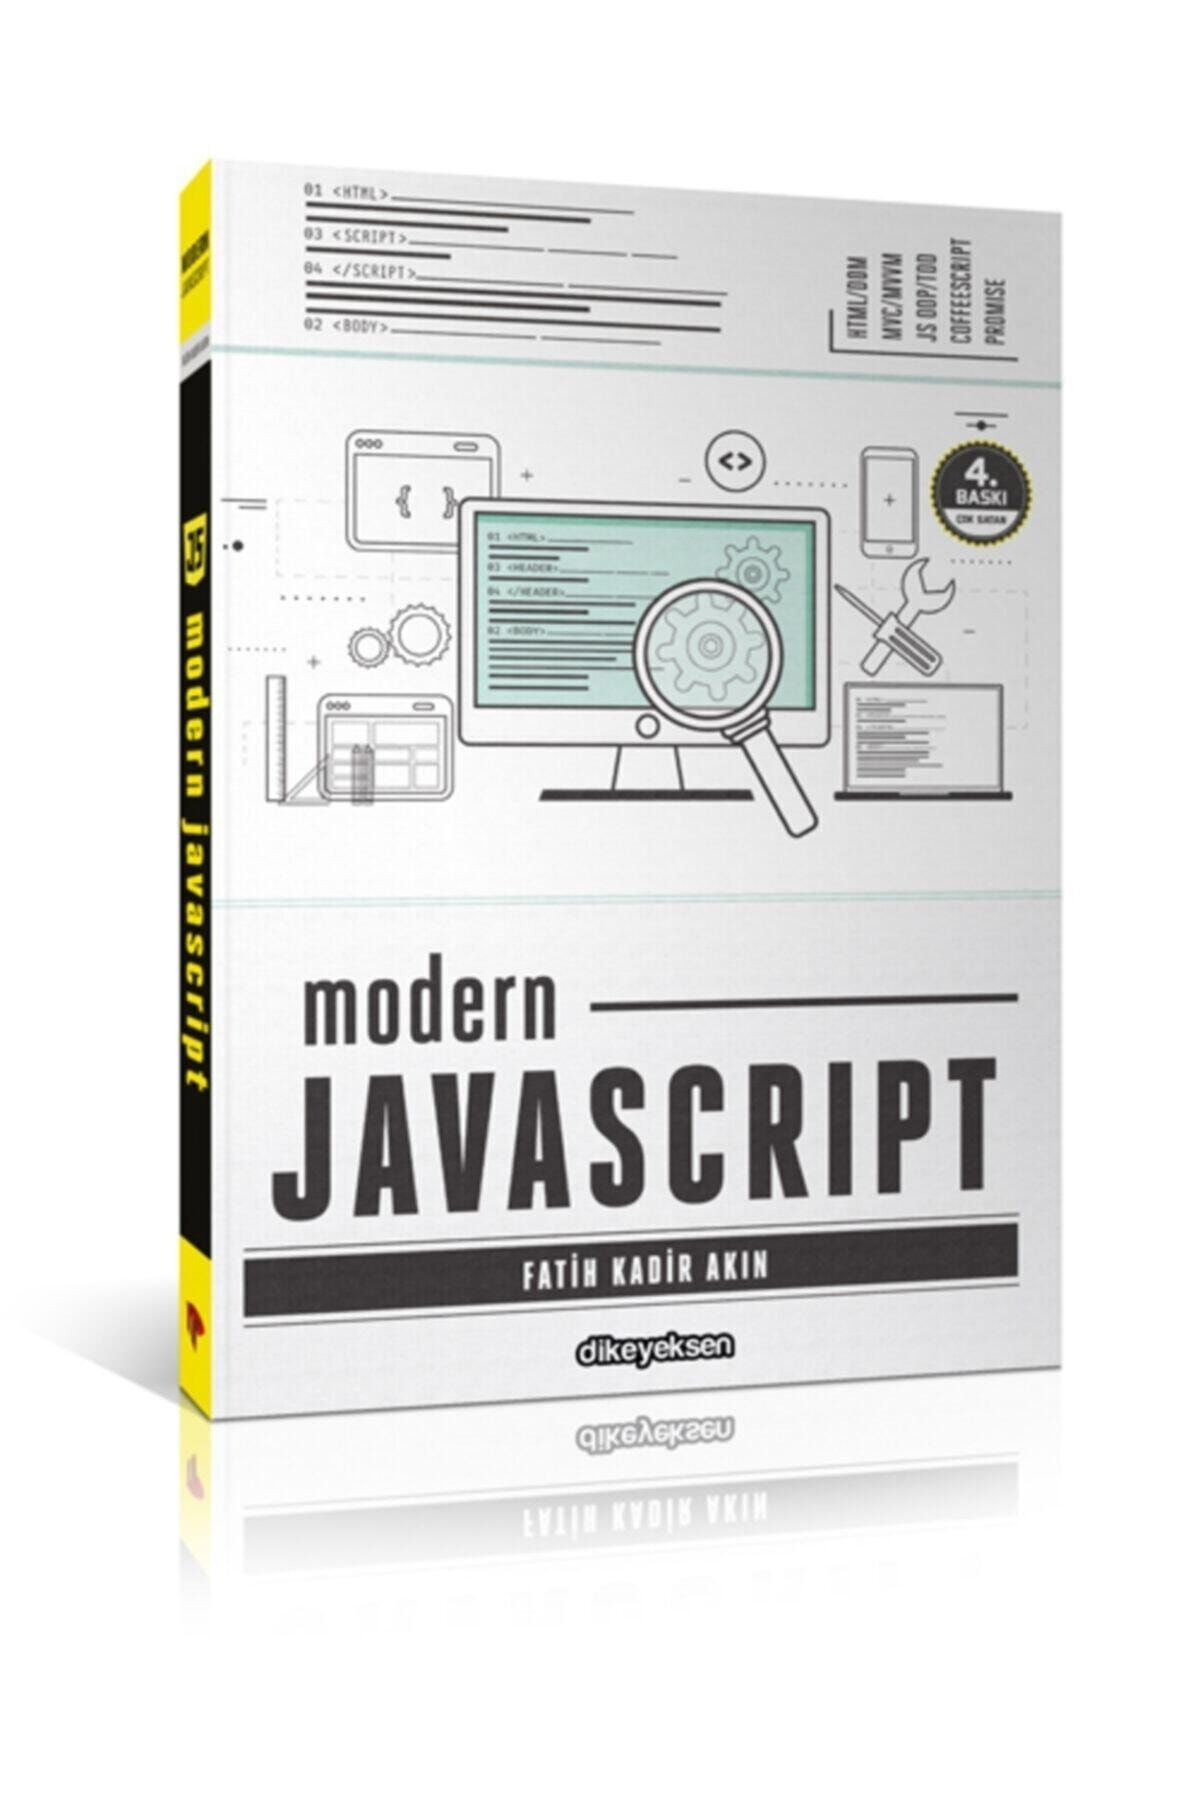 Dikeyeksen Yayıncılık Modern Javascript